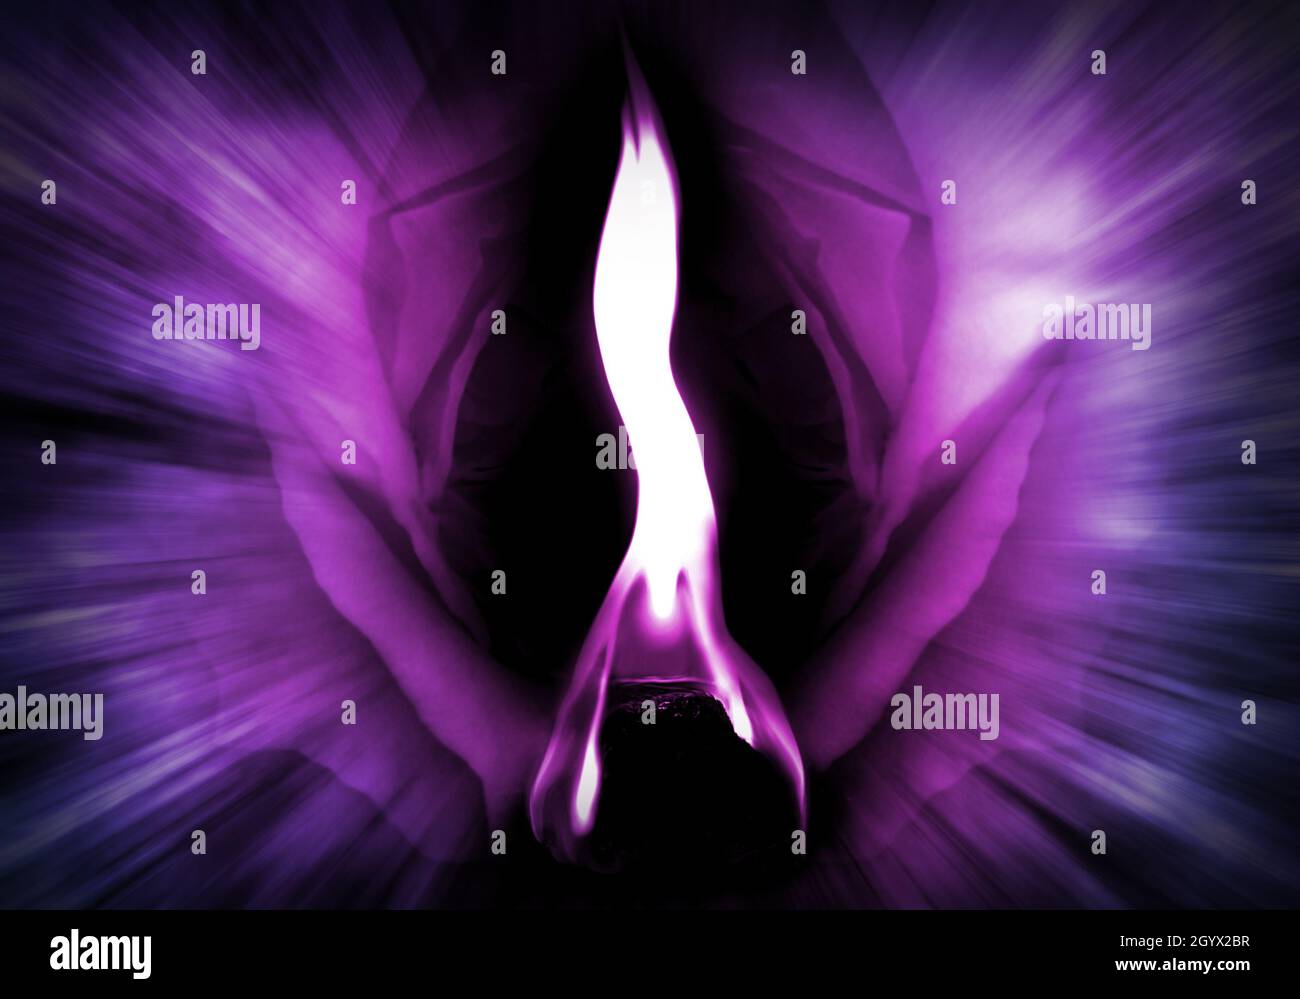 La flamme violette de Saint Germain (énergie Divine et transformation) Banque D'Images